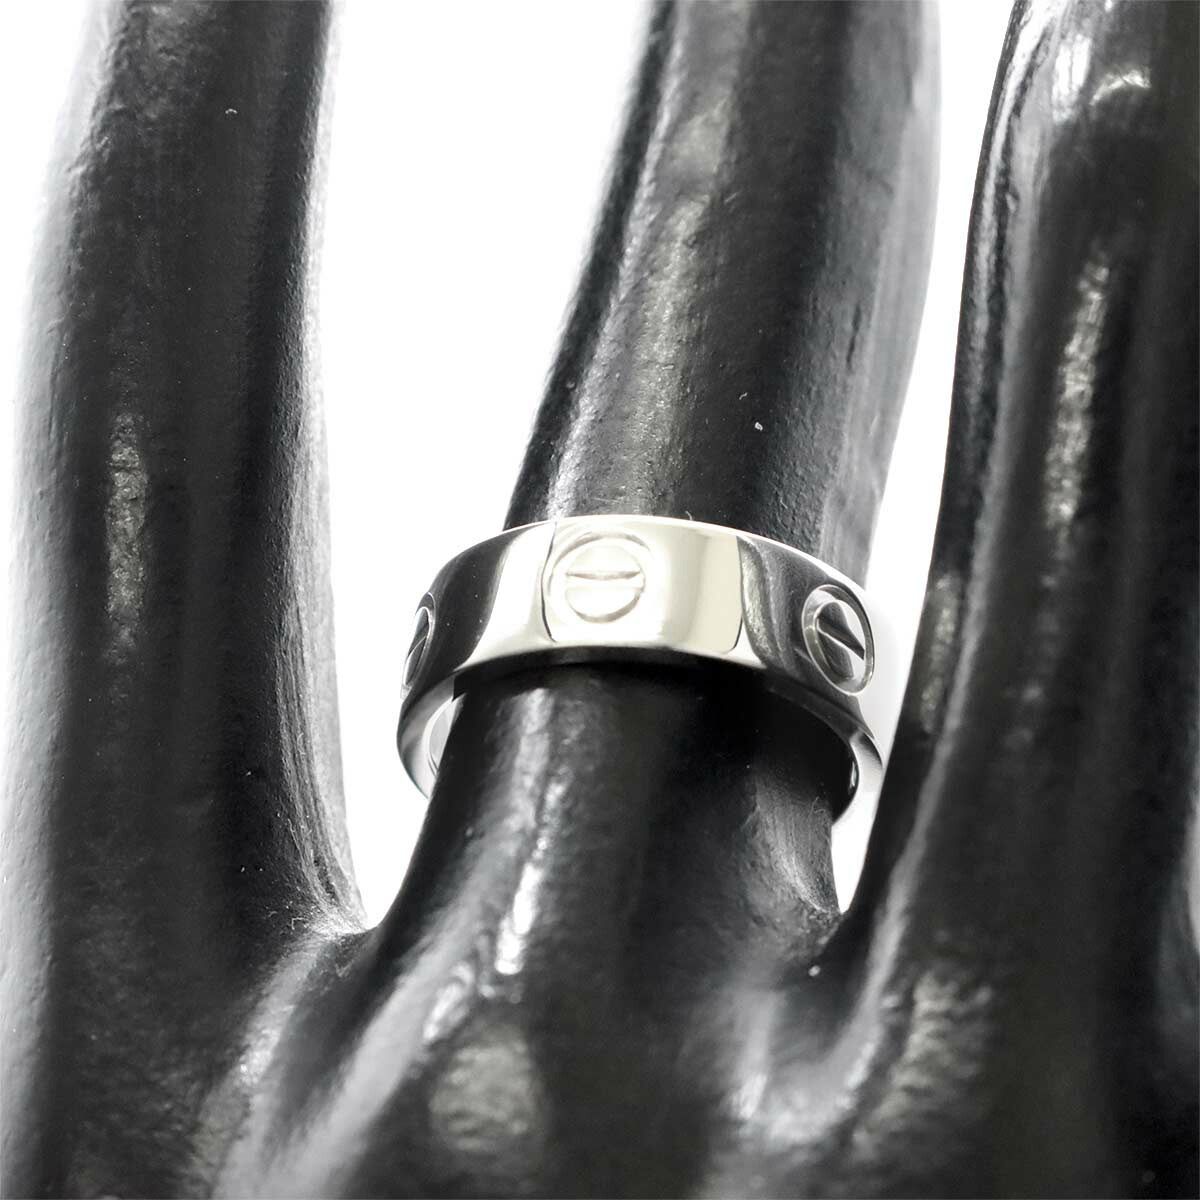 カルティエ Cartier ラブ #49 リング Pt プラチナ 指輪 VLP 90183022